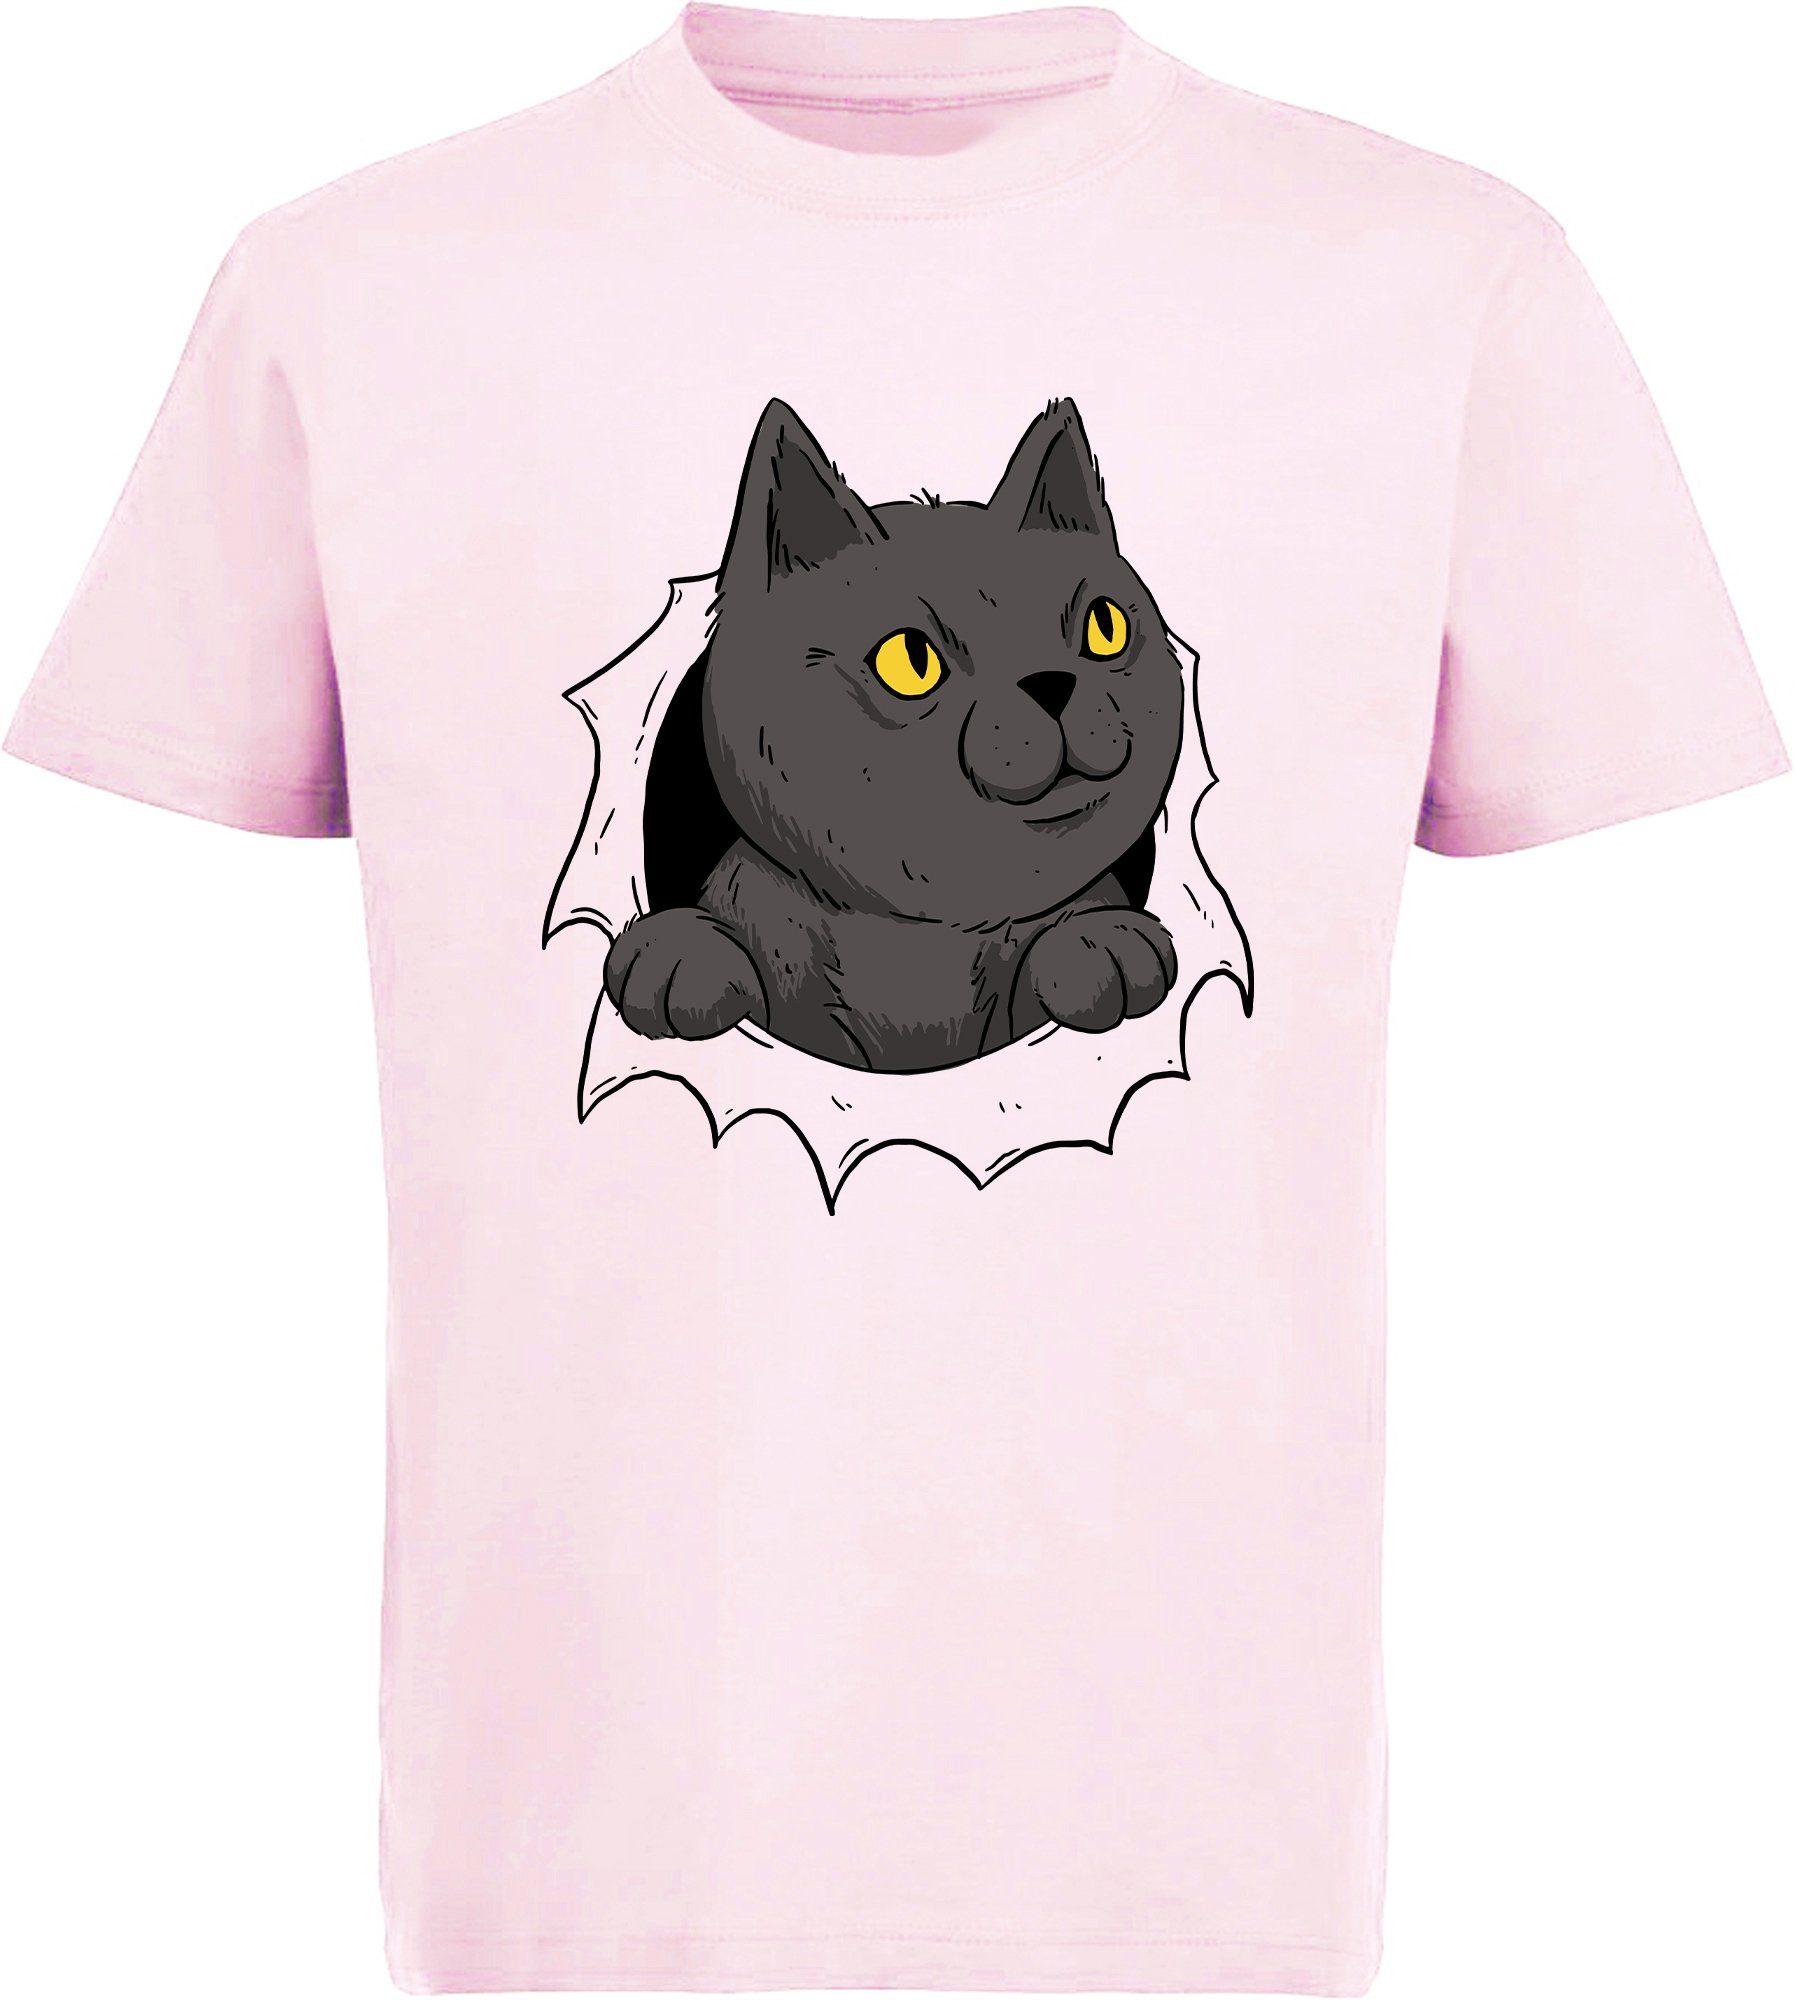 MyDesign24 Print-Shirt bedrucktes Kinder Mädchen T-Shirt Katze die aus einem Loch kommt Baumwollshirt mit Katze, weiß, schwarz, rot, rosa, i105